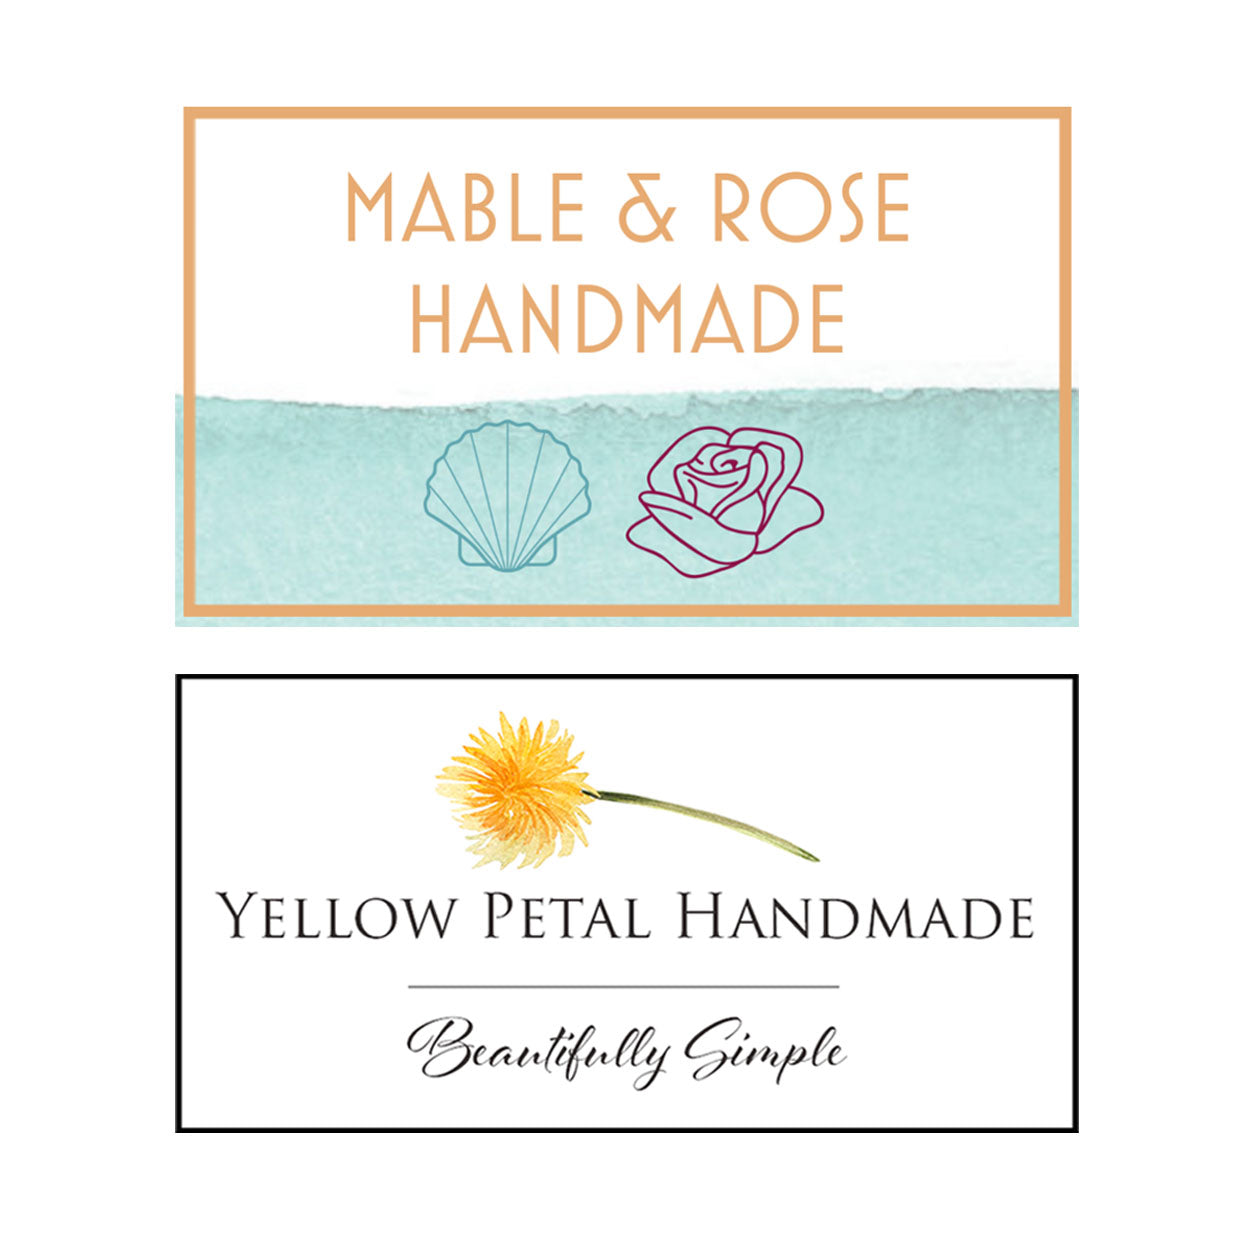 Mable and Rose Handmade and Yellow Petal Handmade